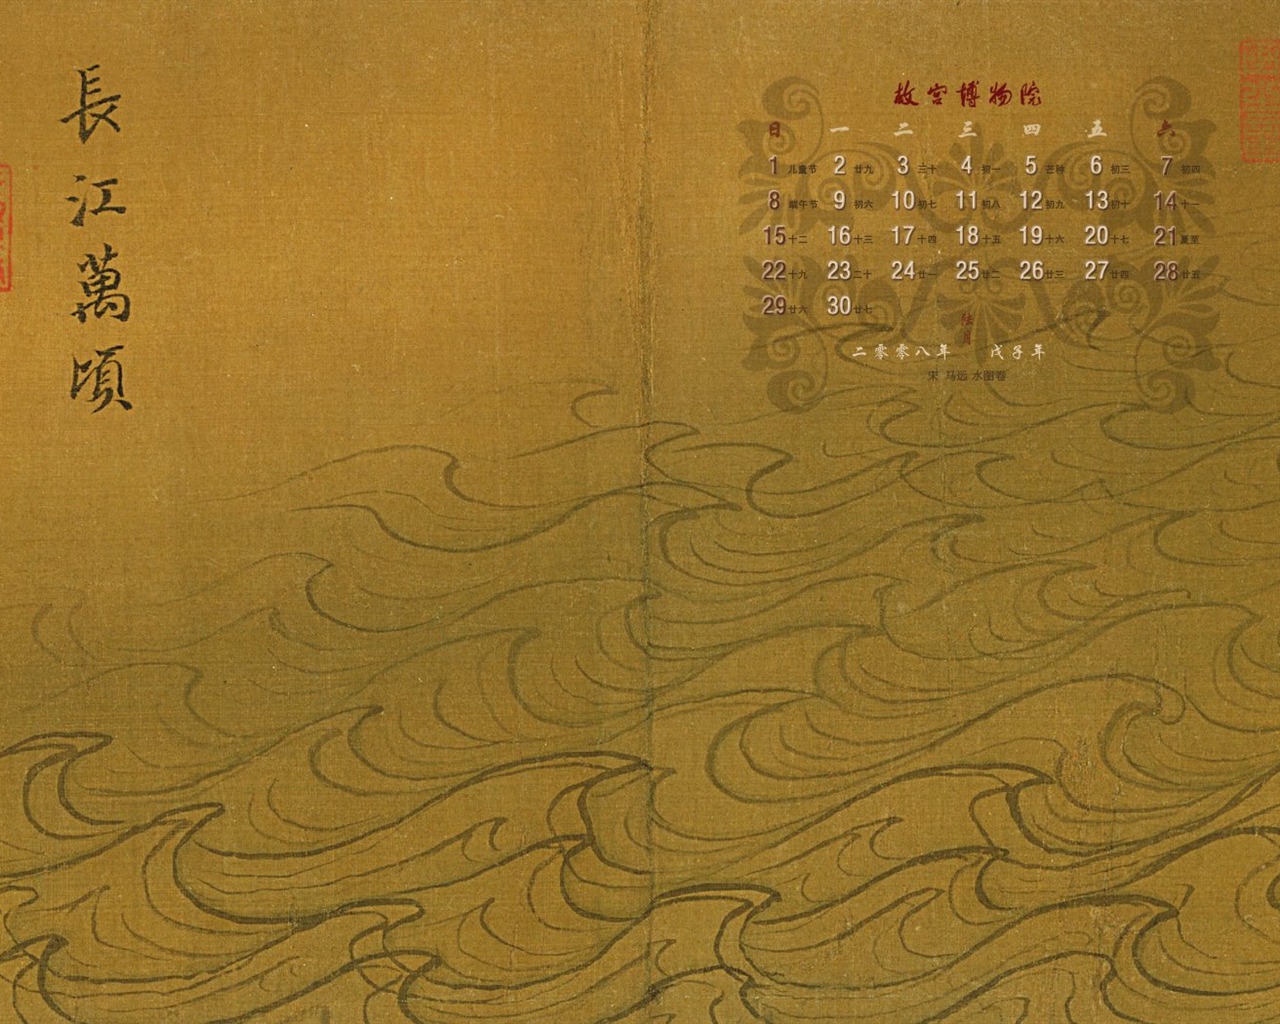 北京故宮博物院 文物展壁紙(二) #13 - 1280x1024